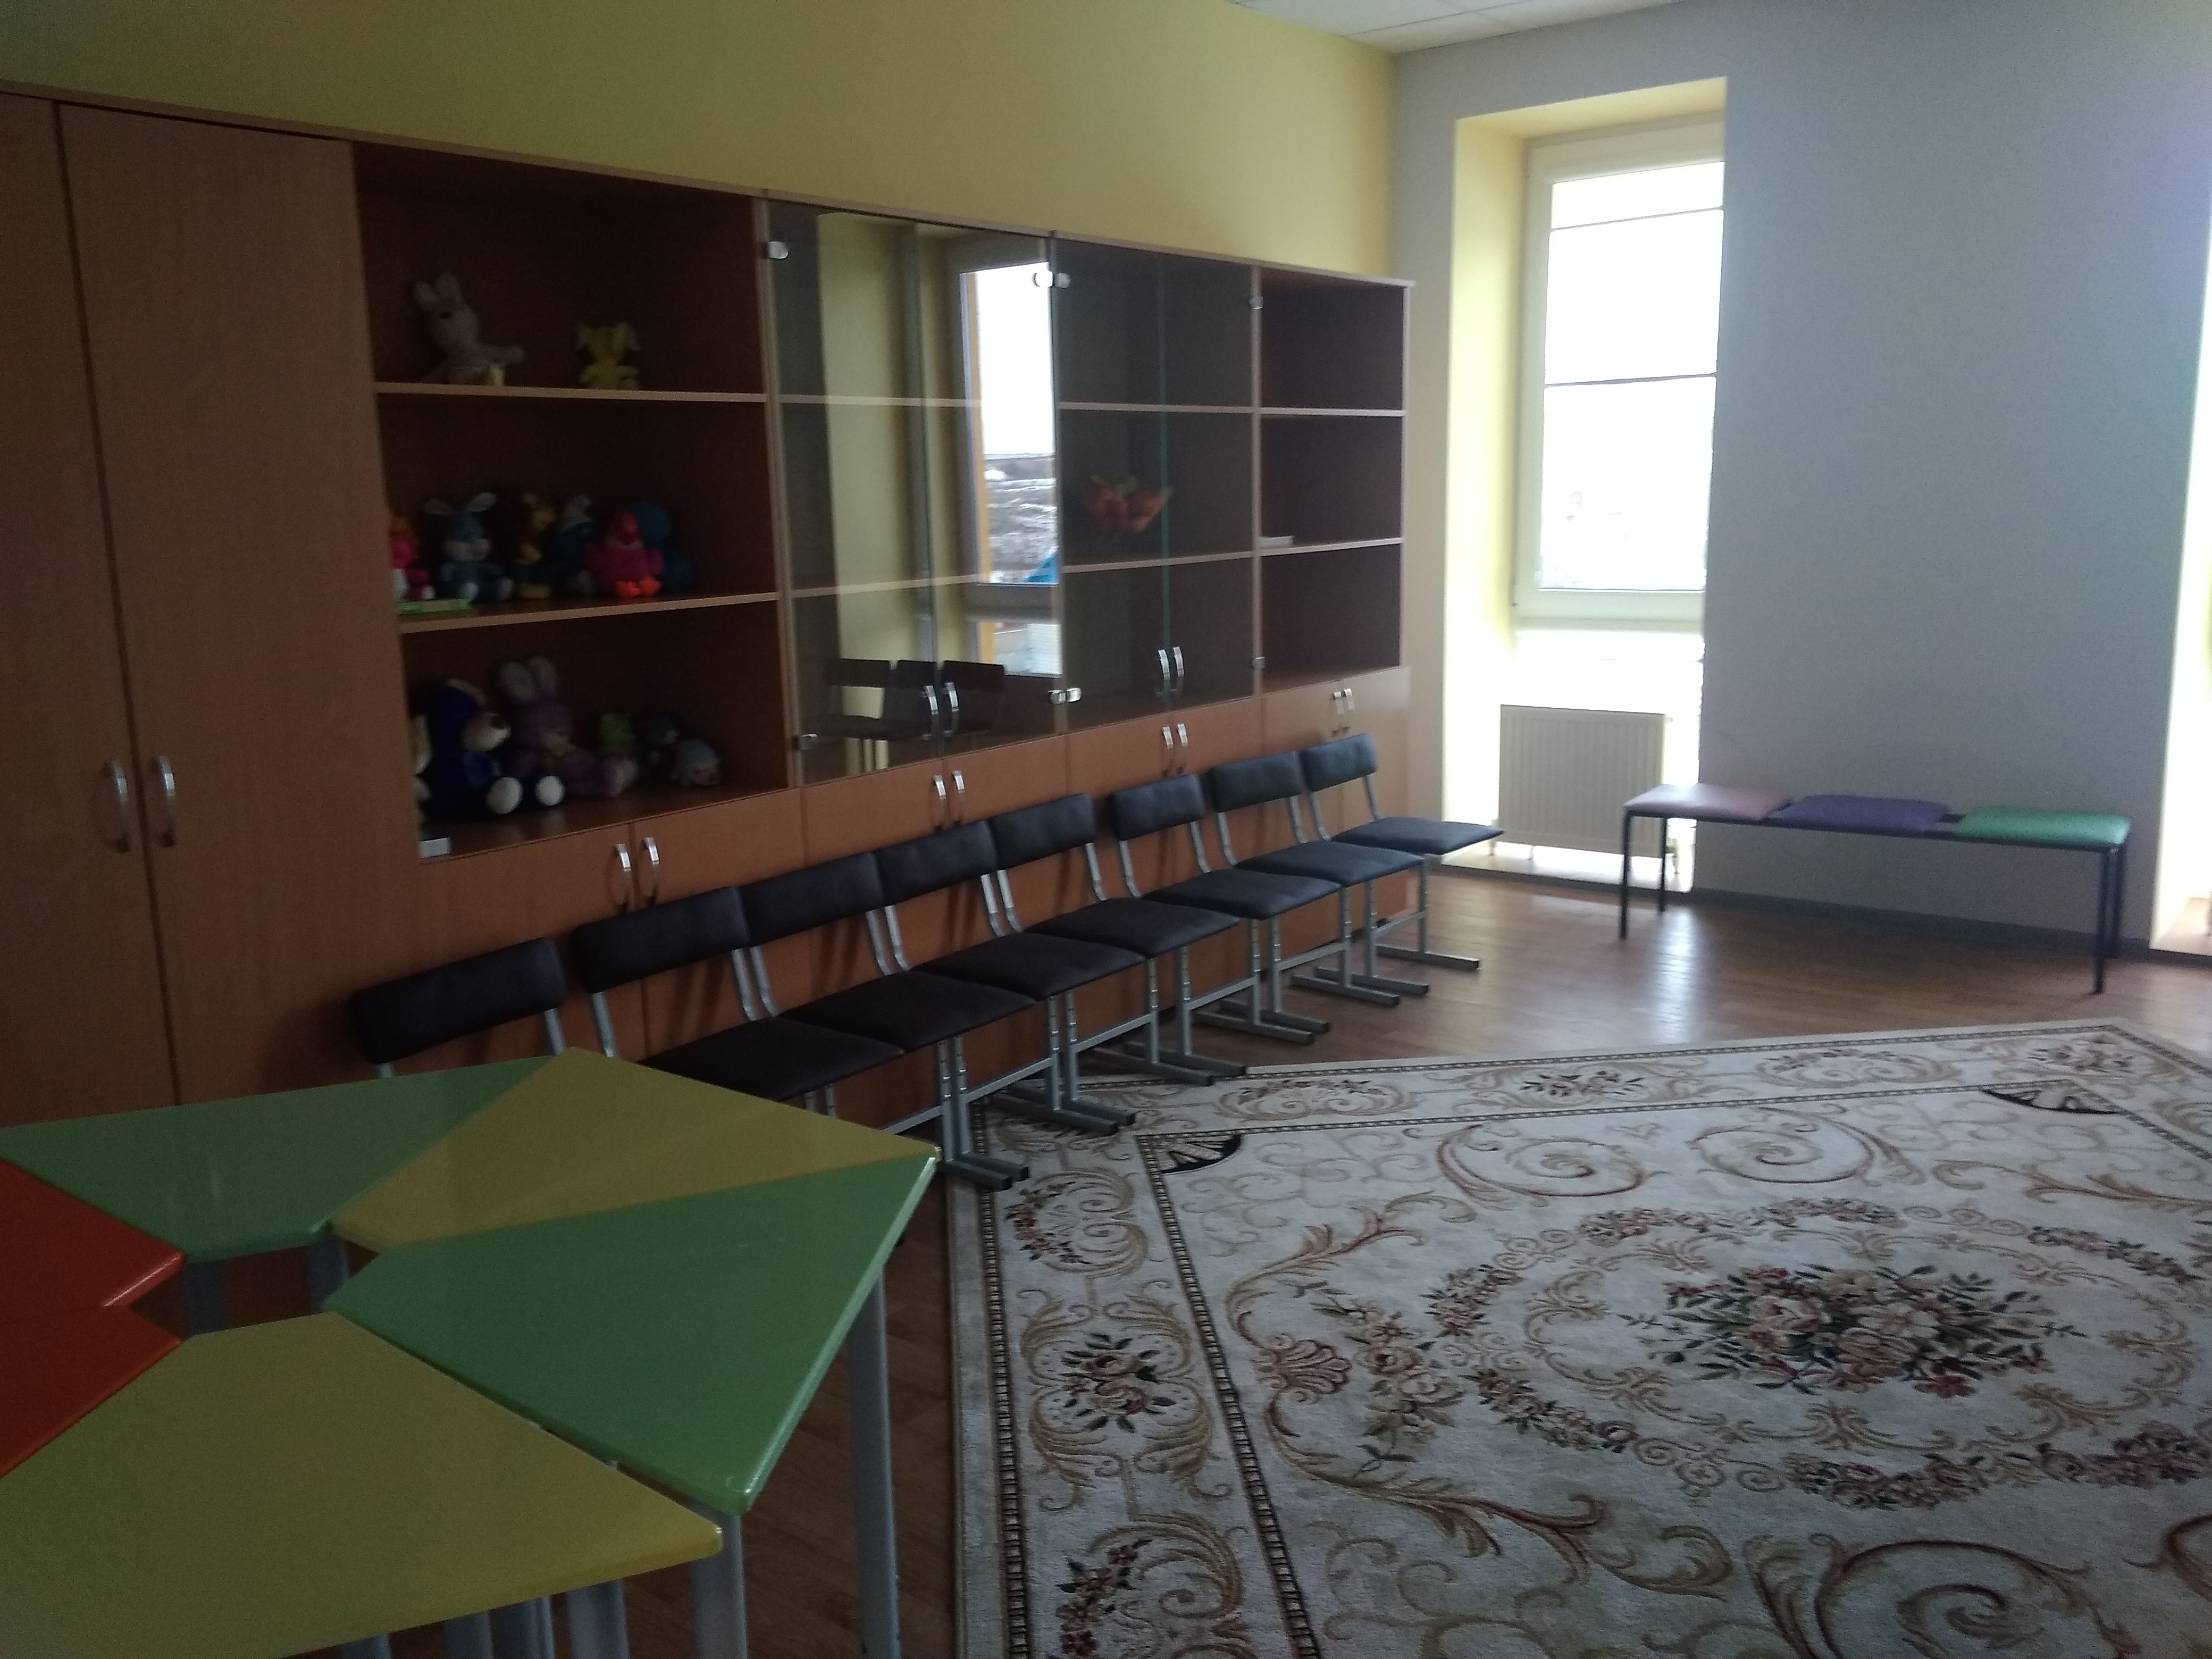 игровая комната для внеурочных занятий школьников